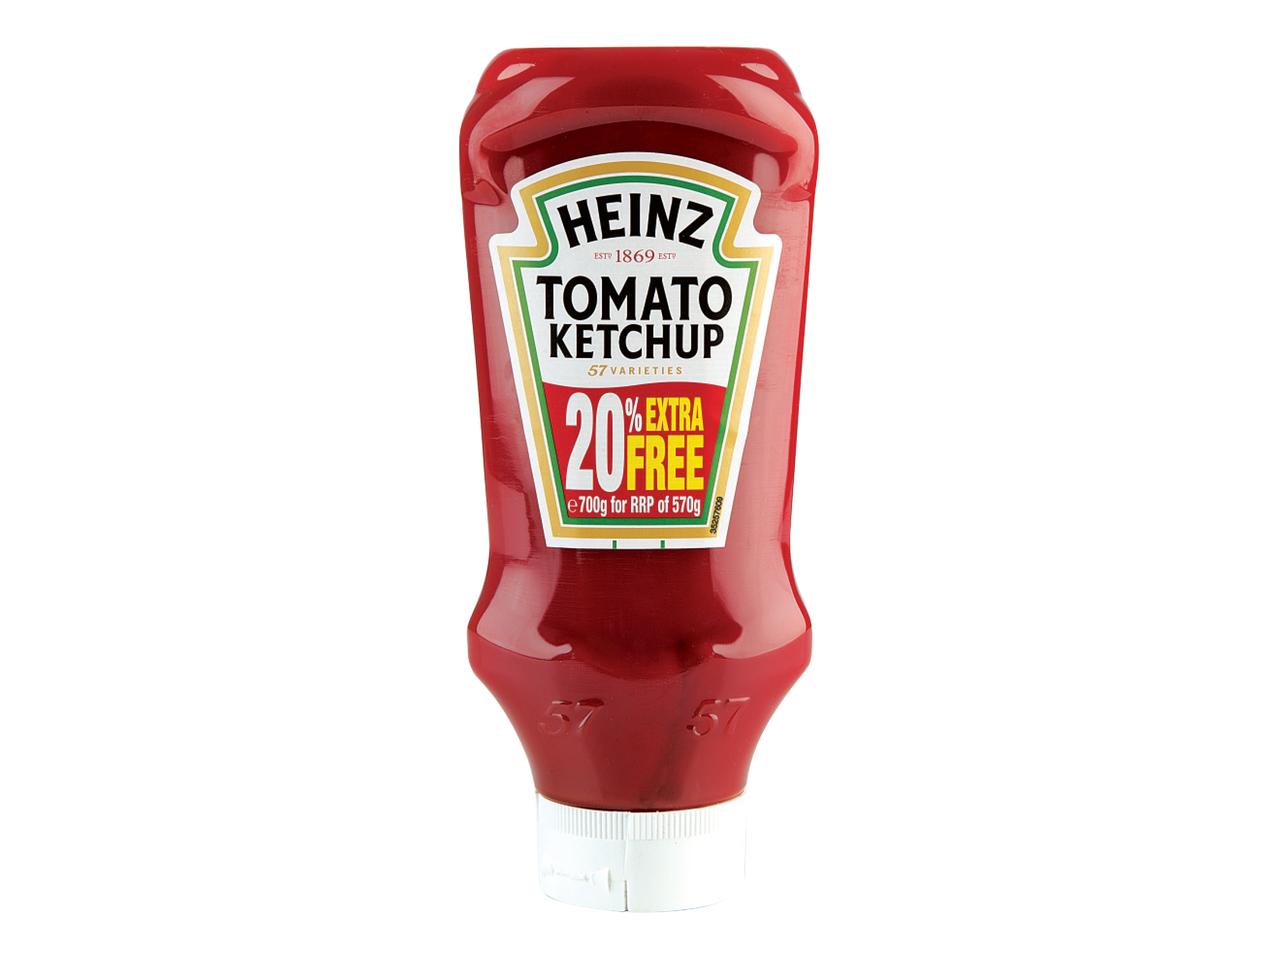 HEINZ Tomato Ketchup